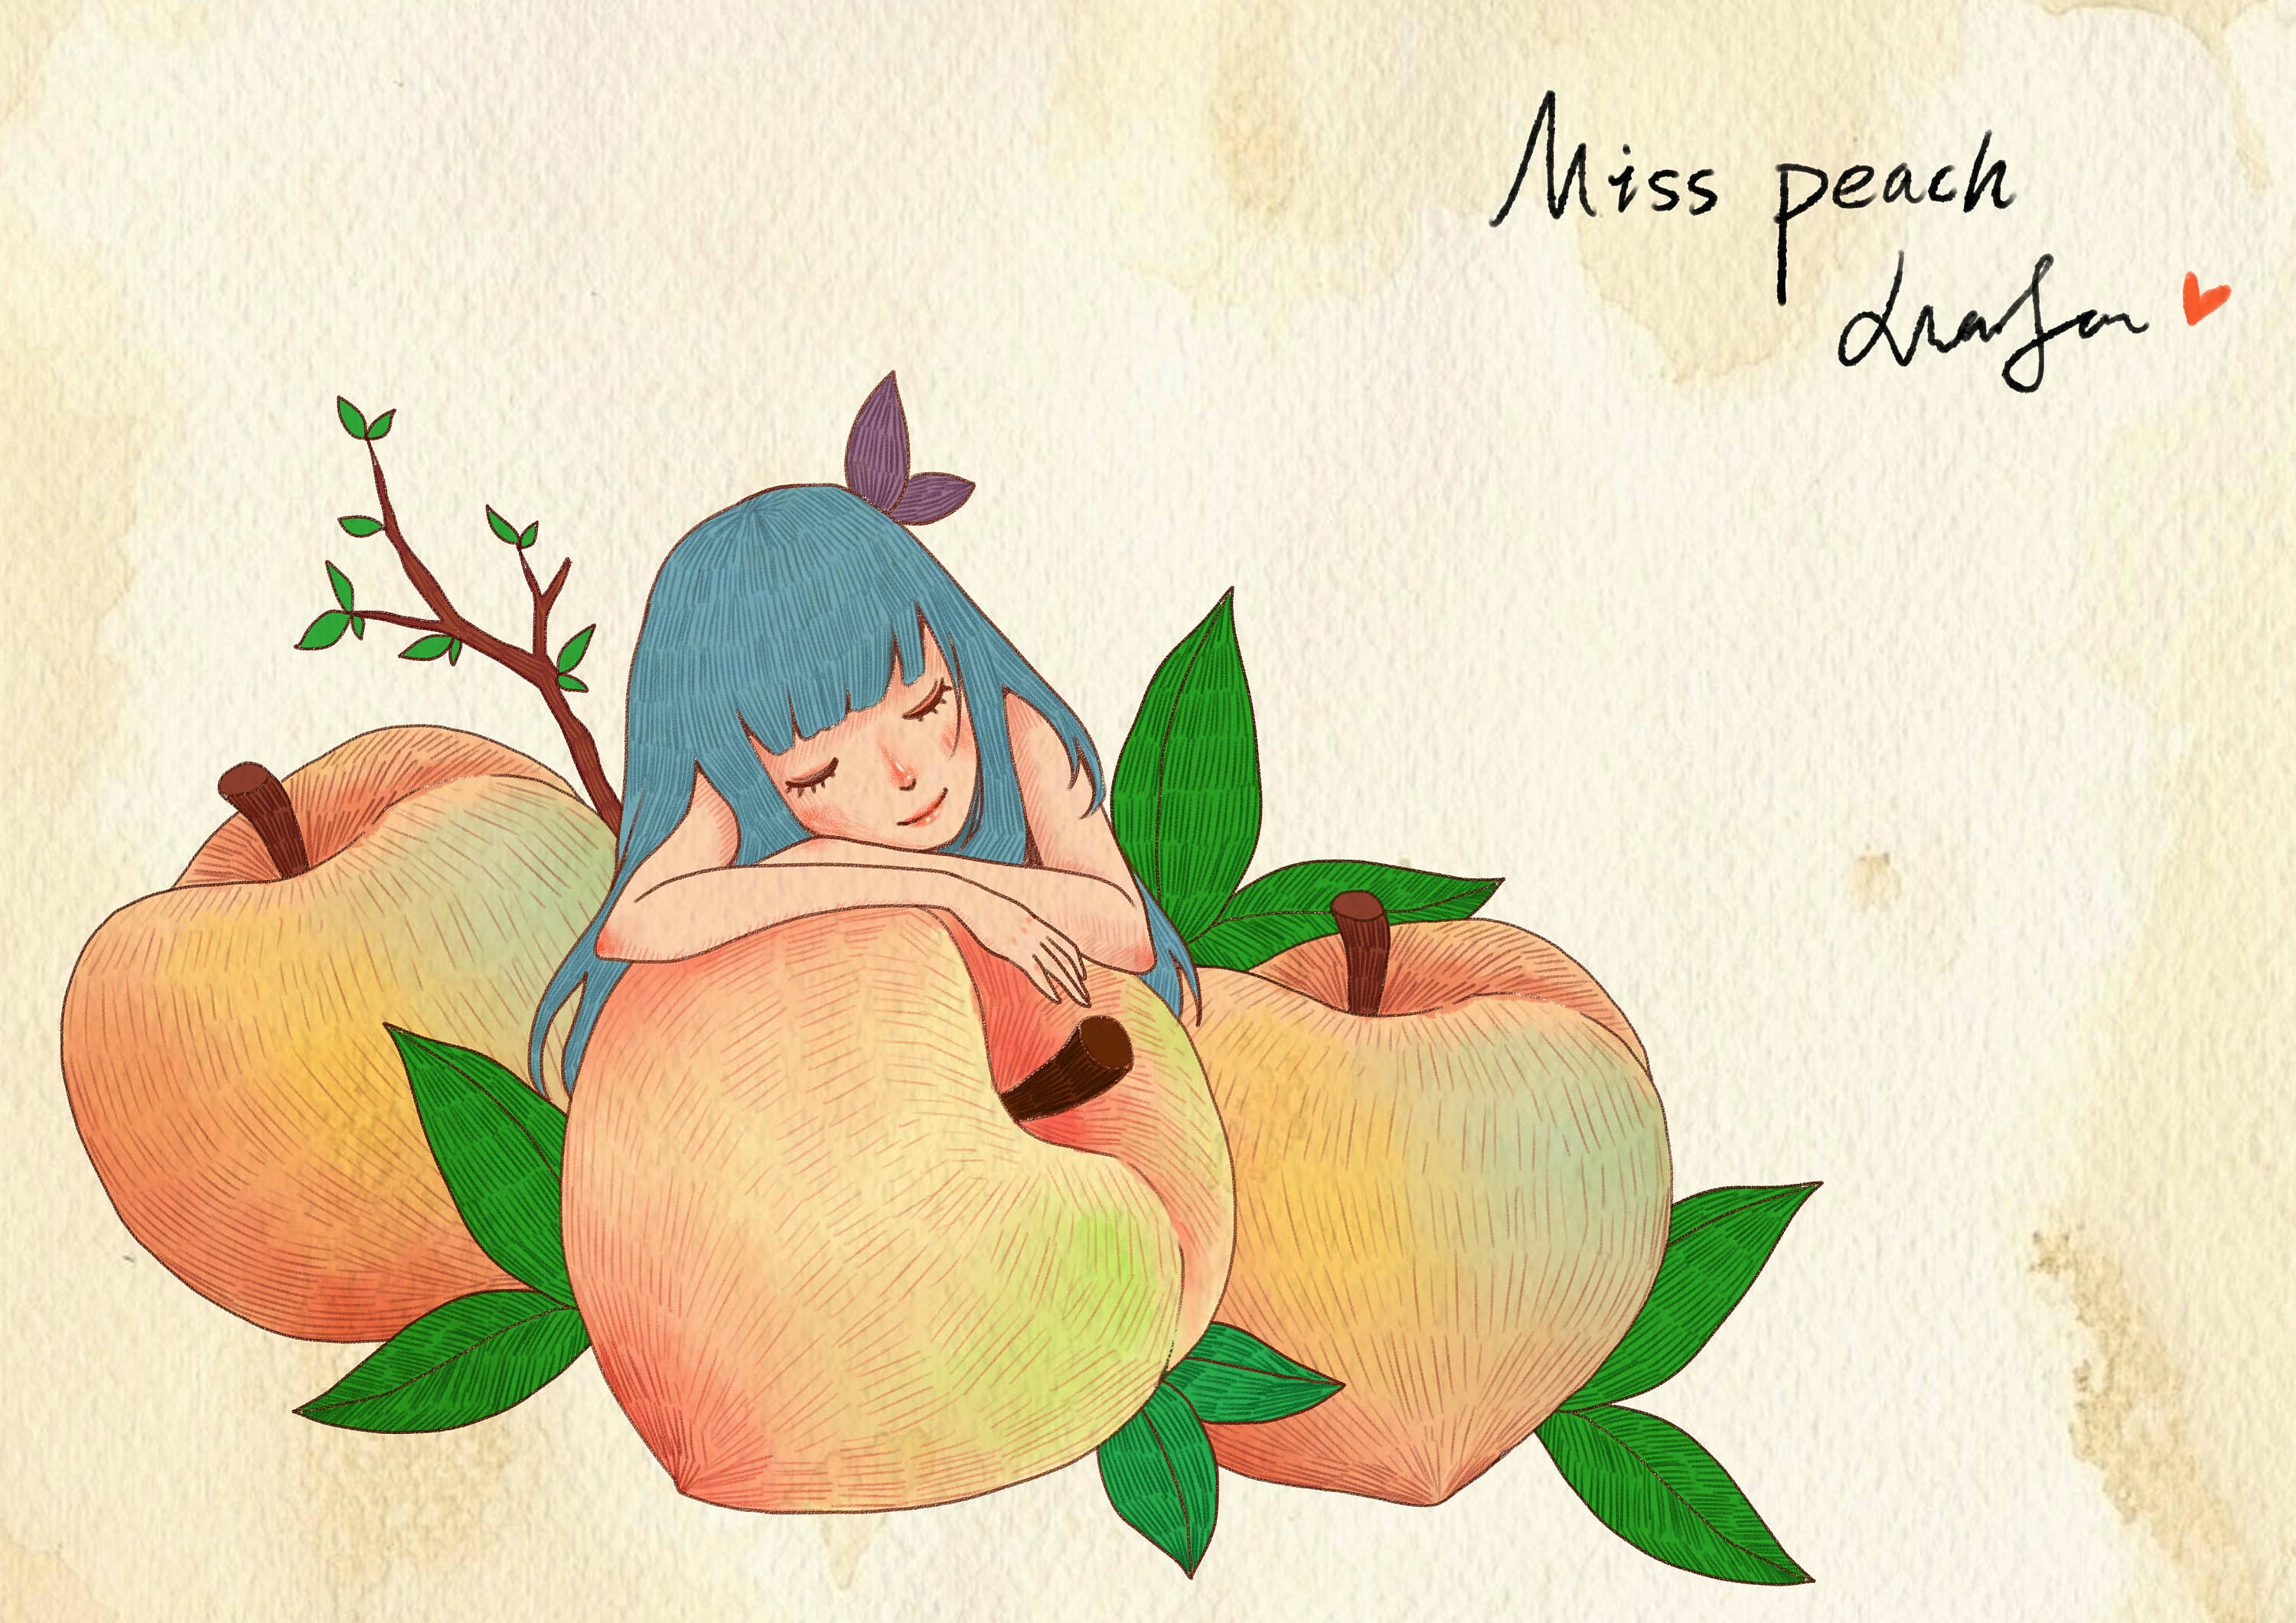 摘桃子插画图片